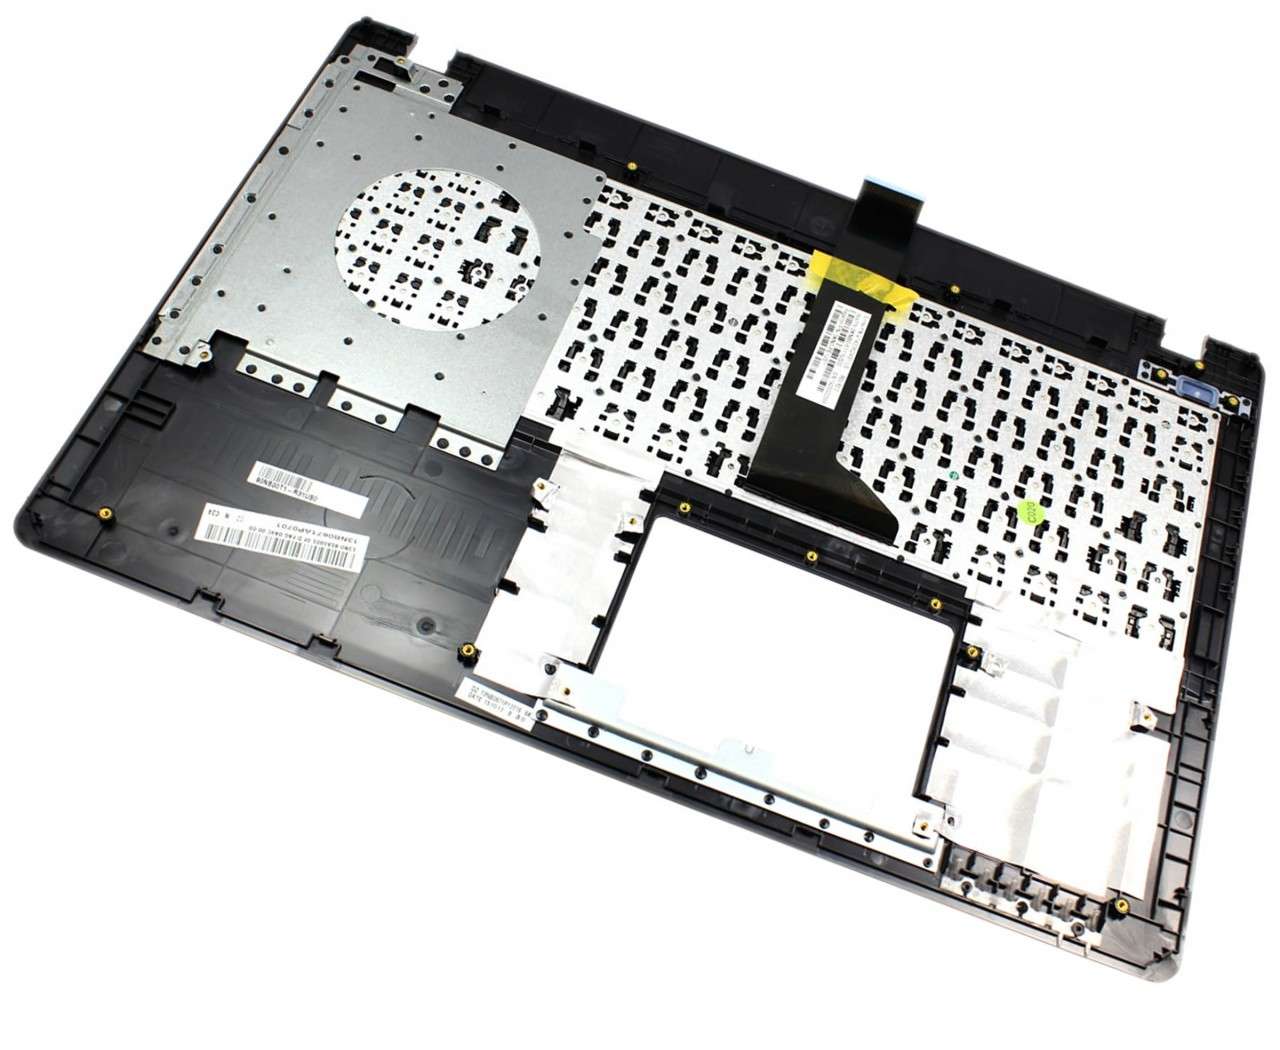 Tastatura Asus X552VL neagra cu Palmrest argintiu